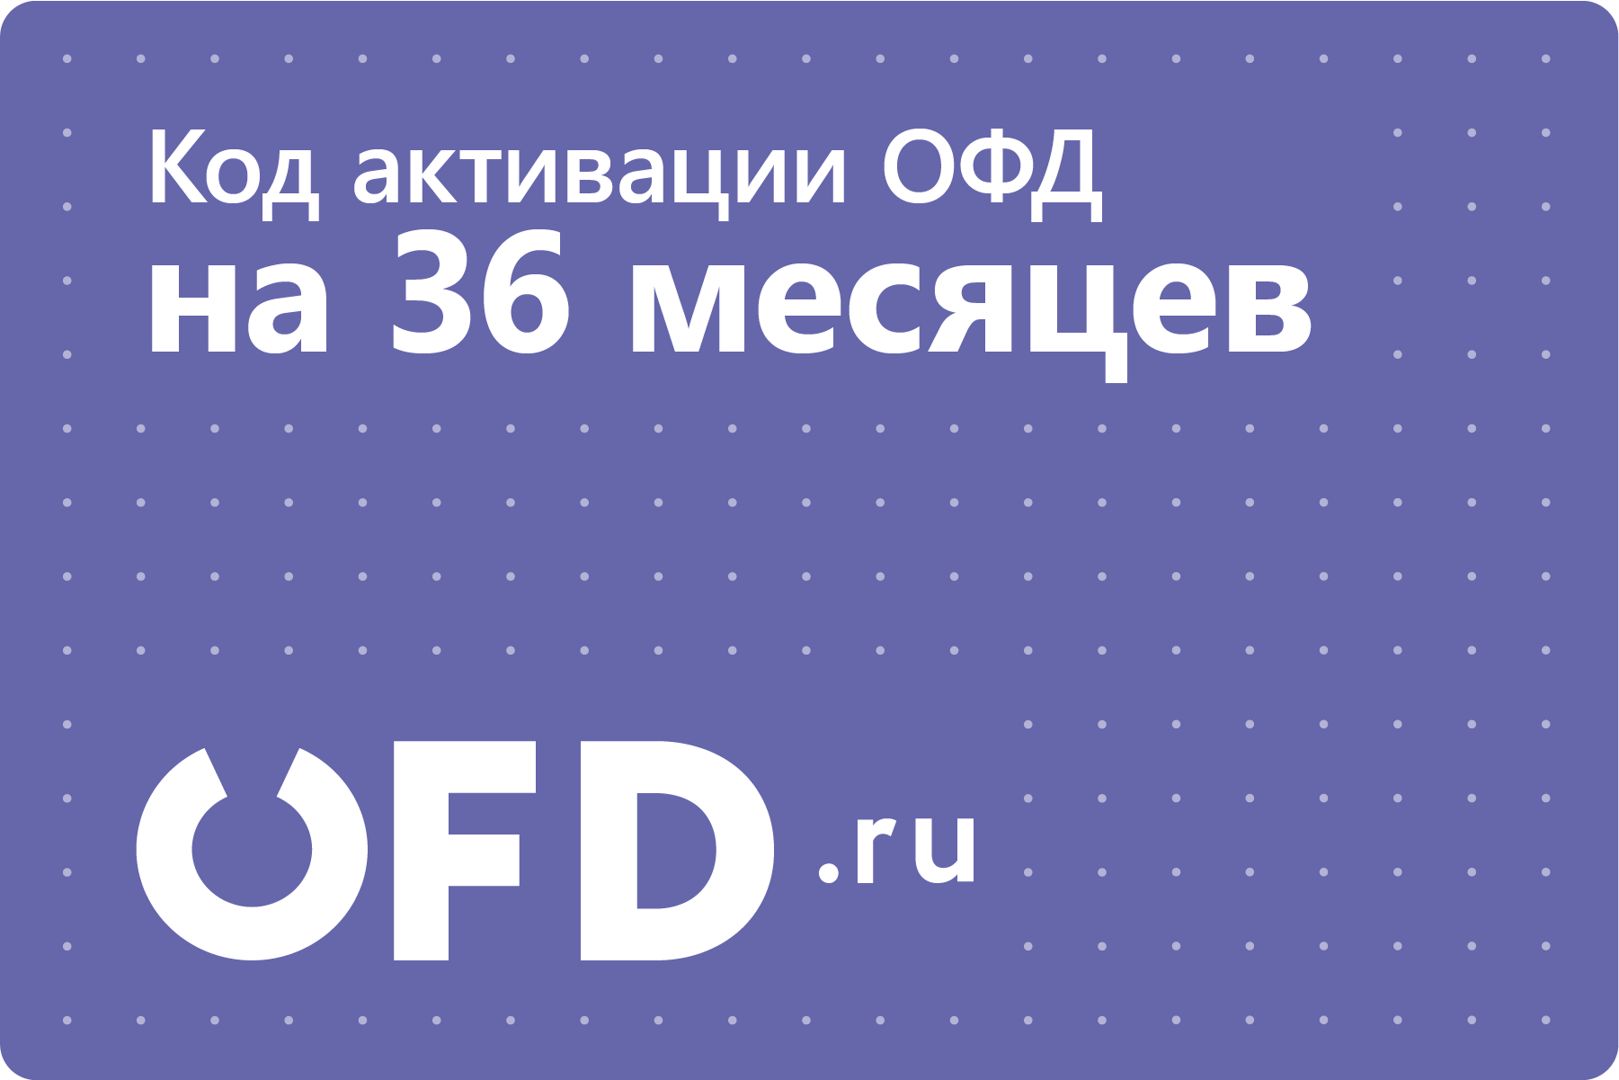 Код активации Петер-Сервис (OFD.ru) на 36 месяцев